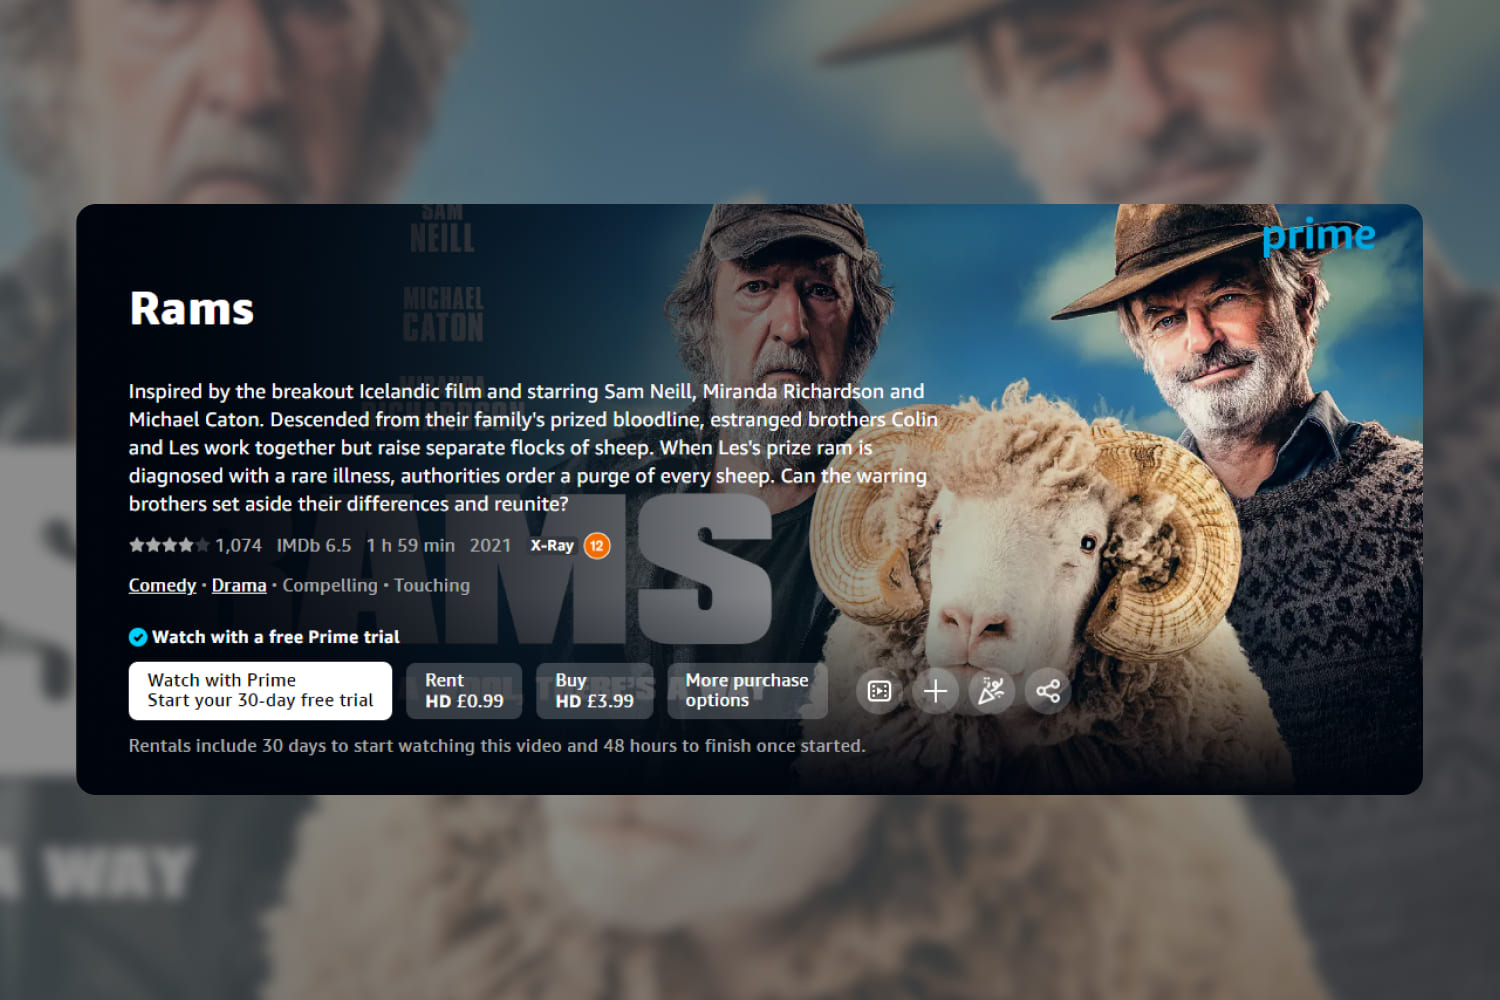 Screenshot of Rams on Amazon website.